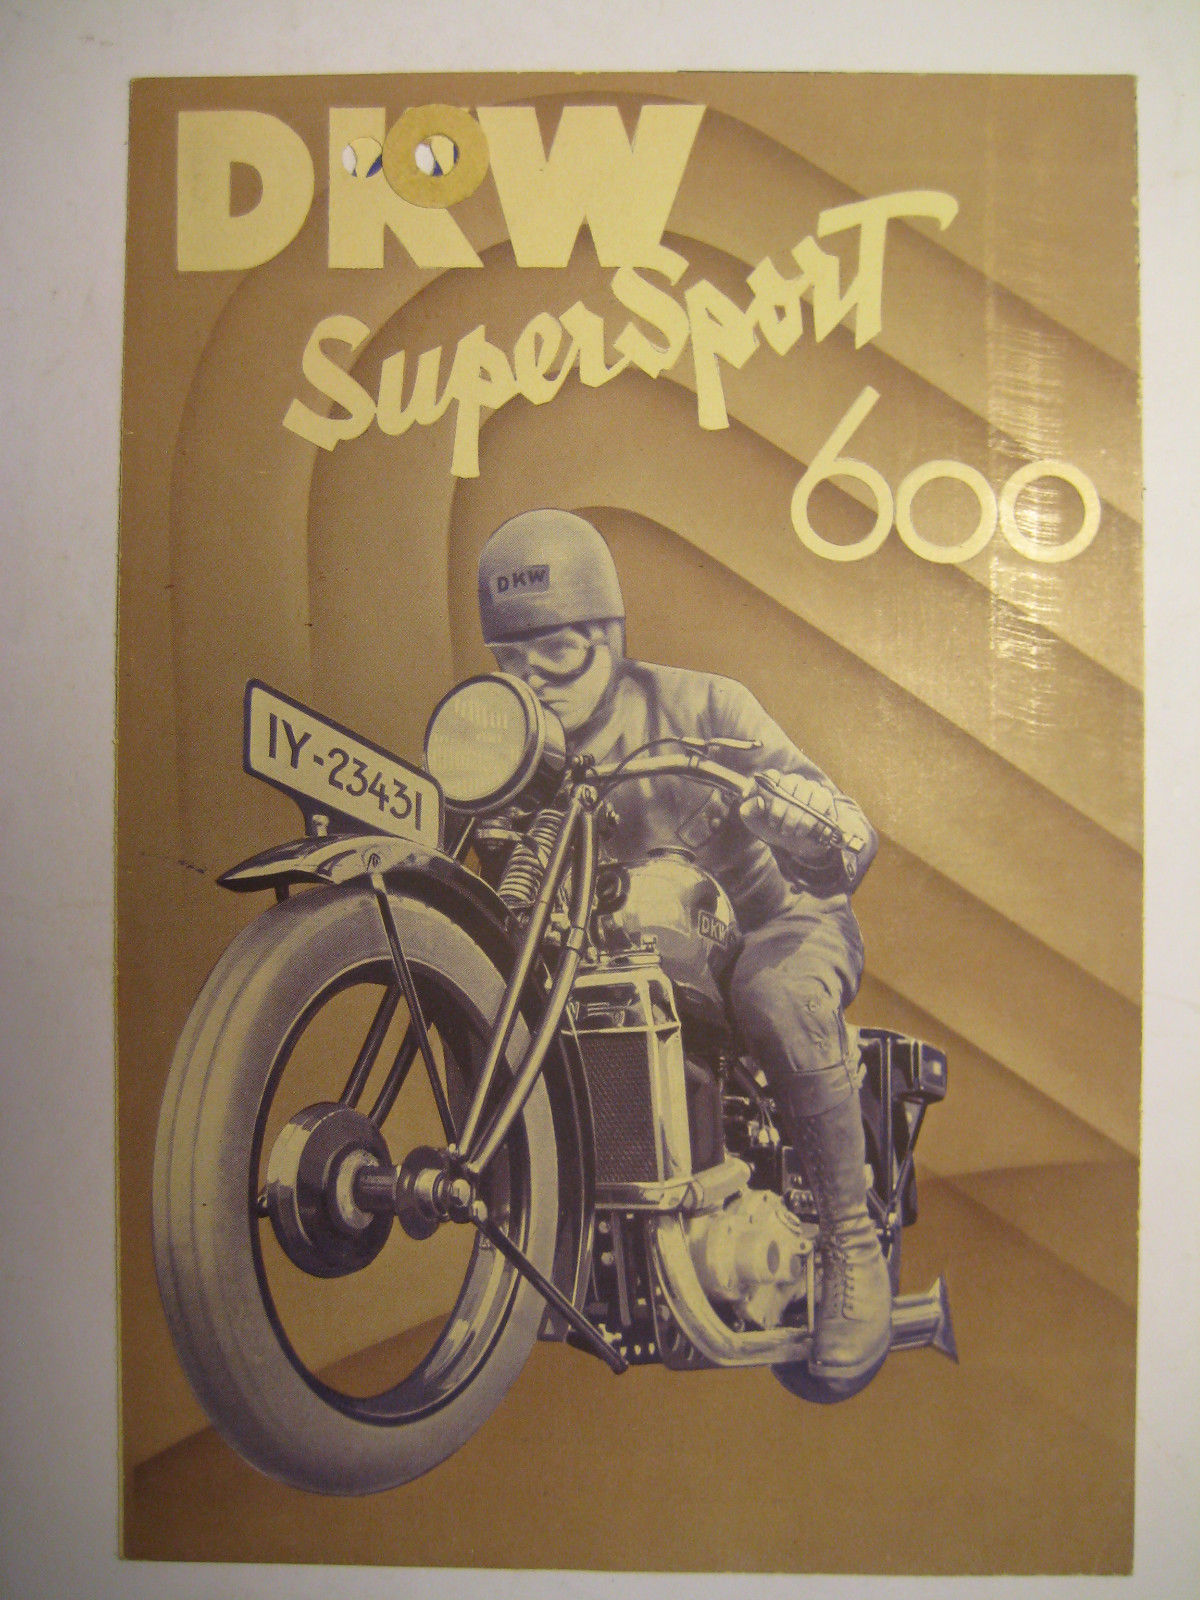 Originaler-Prospekt-Motorräder-der-DKW-Werke-Zschopau-Supersport-600